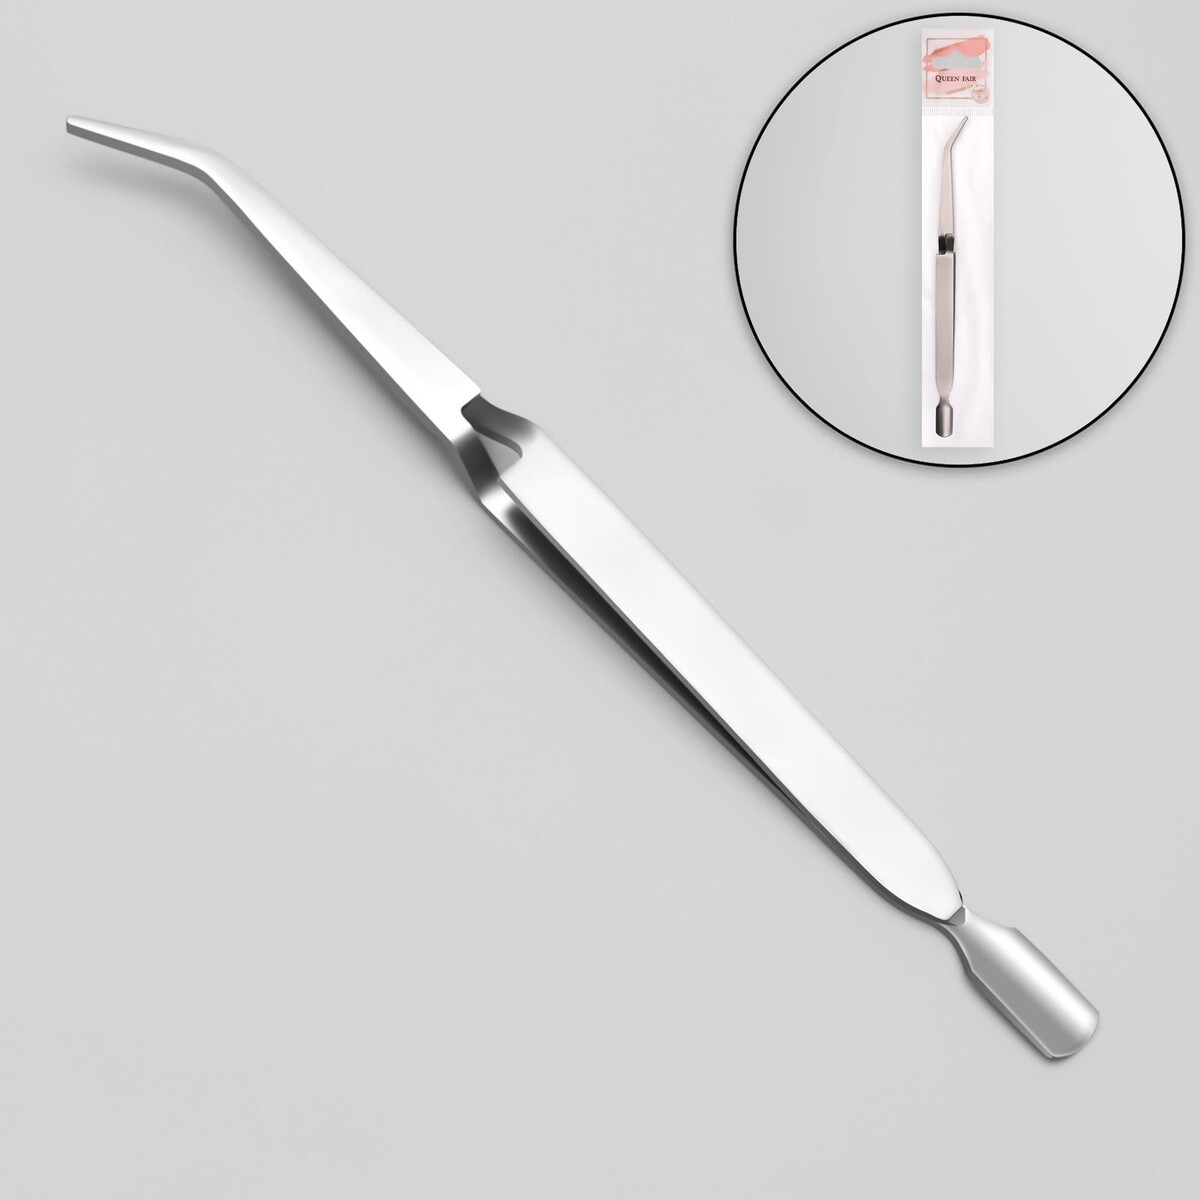 Пинцет-шабер для наращивания ногтей, 16,5 см, цвет серебристый пинцет в форме ножниц прорезиненные ручки 8 см на блистере серебристый